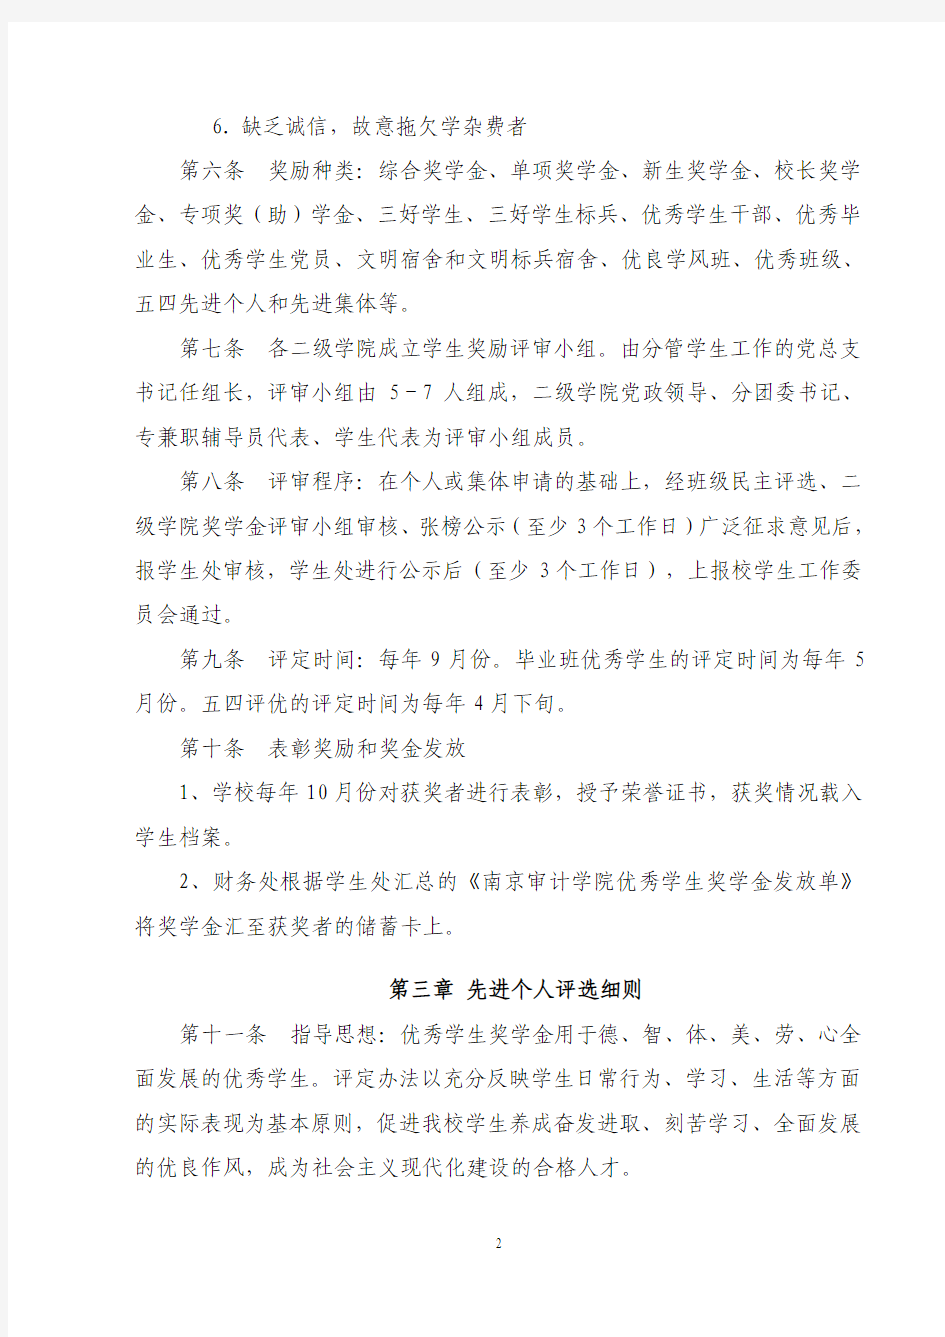 南京审计学院优秀学生奖励条例(2011年)